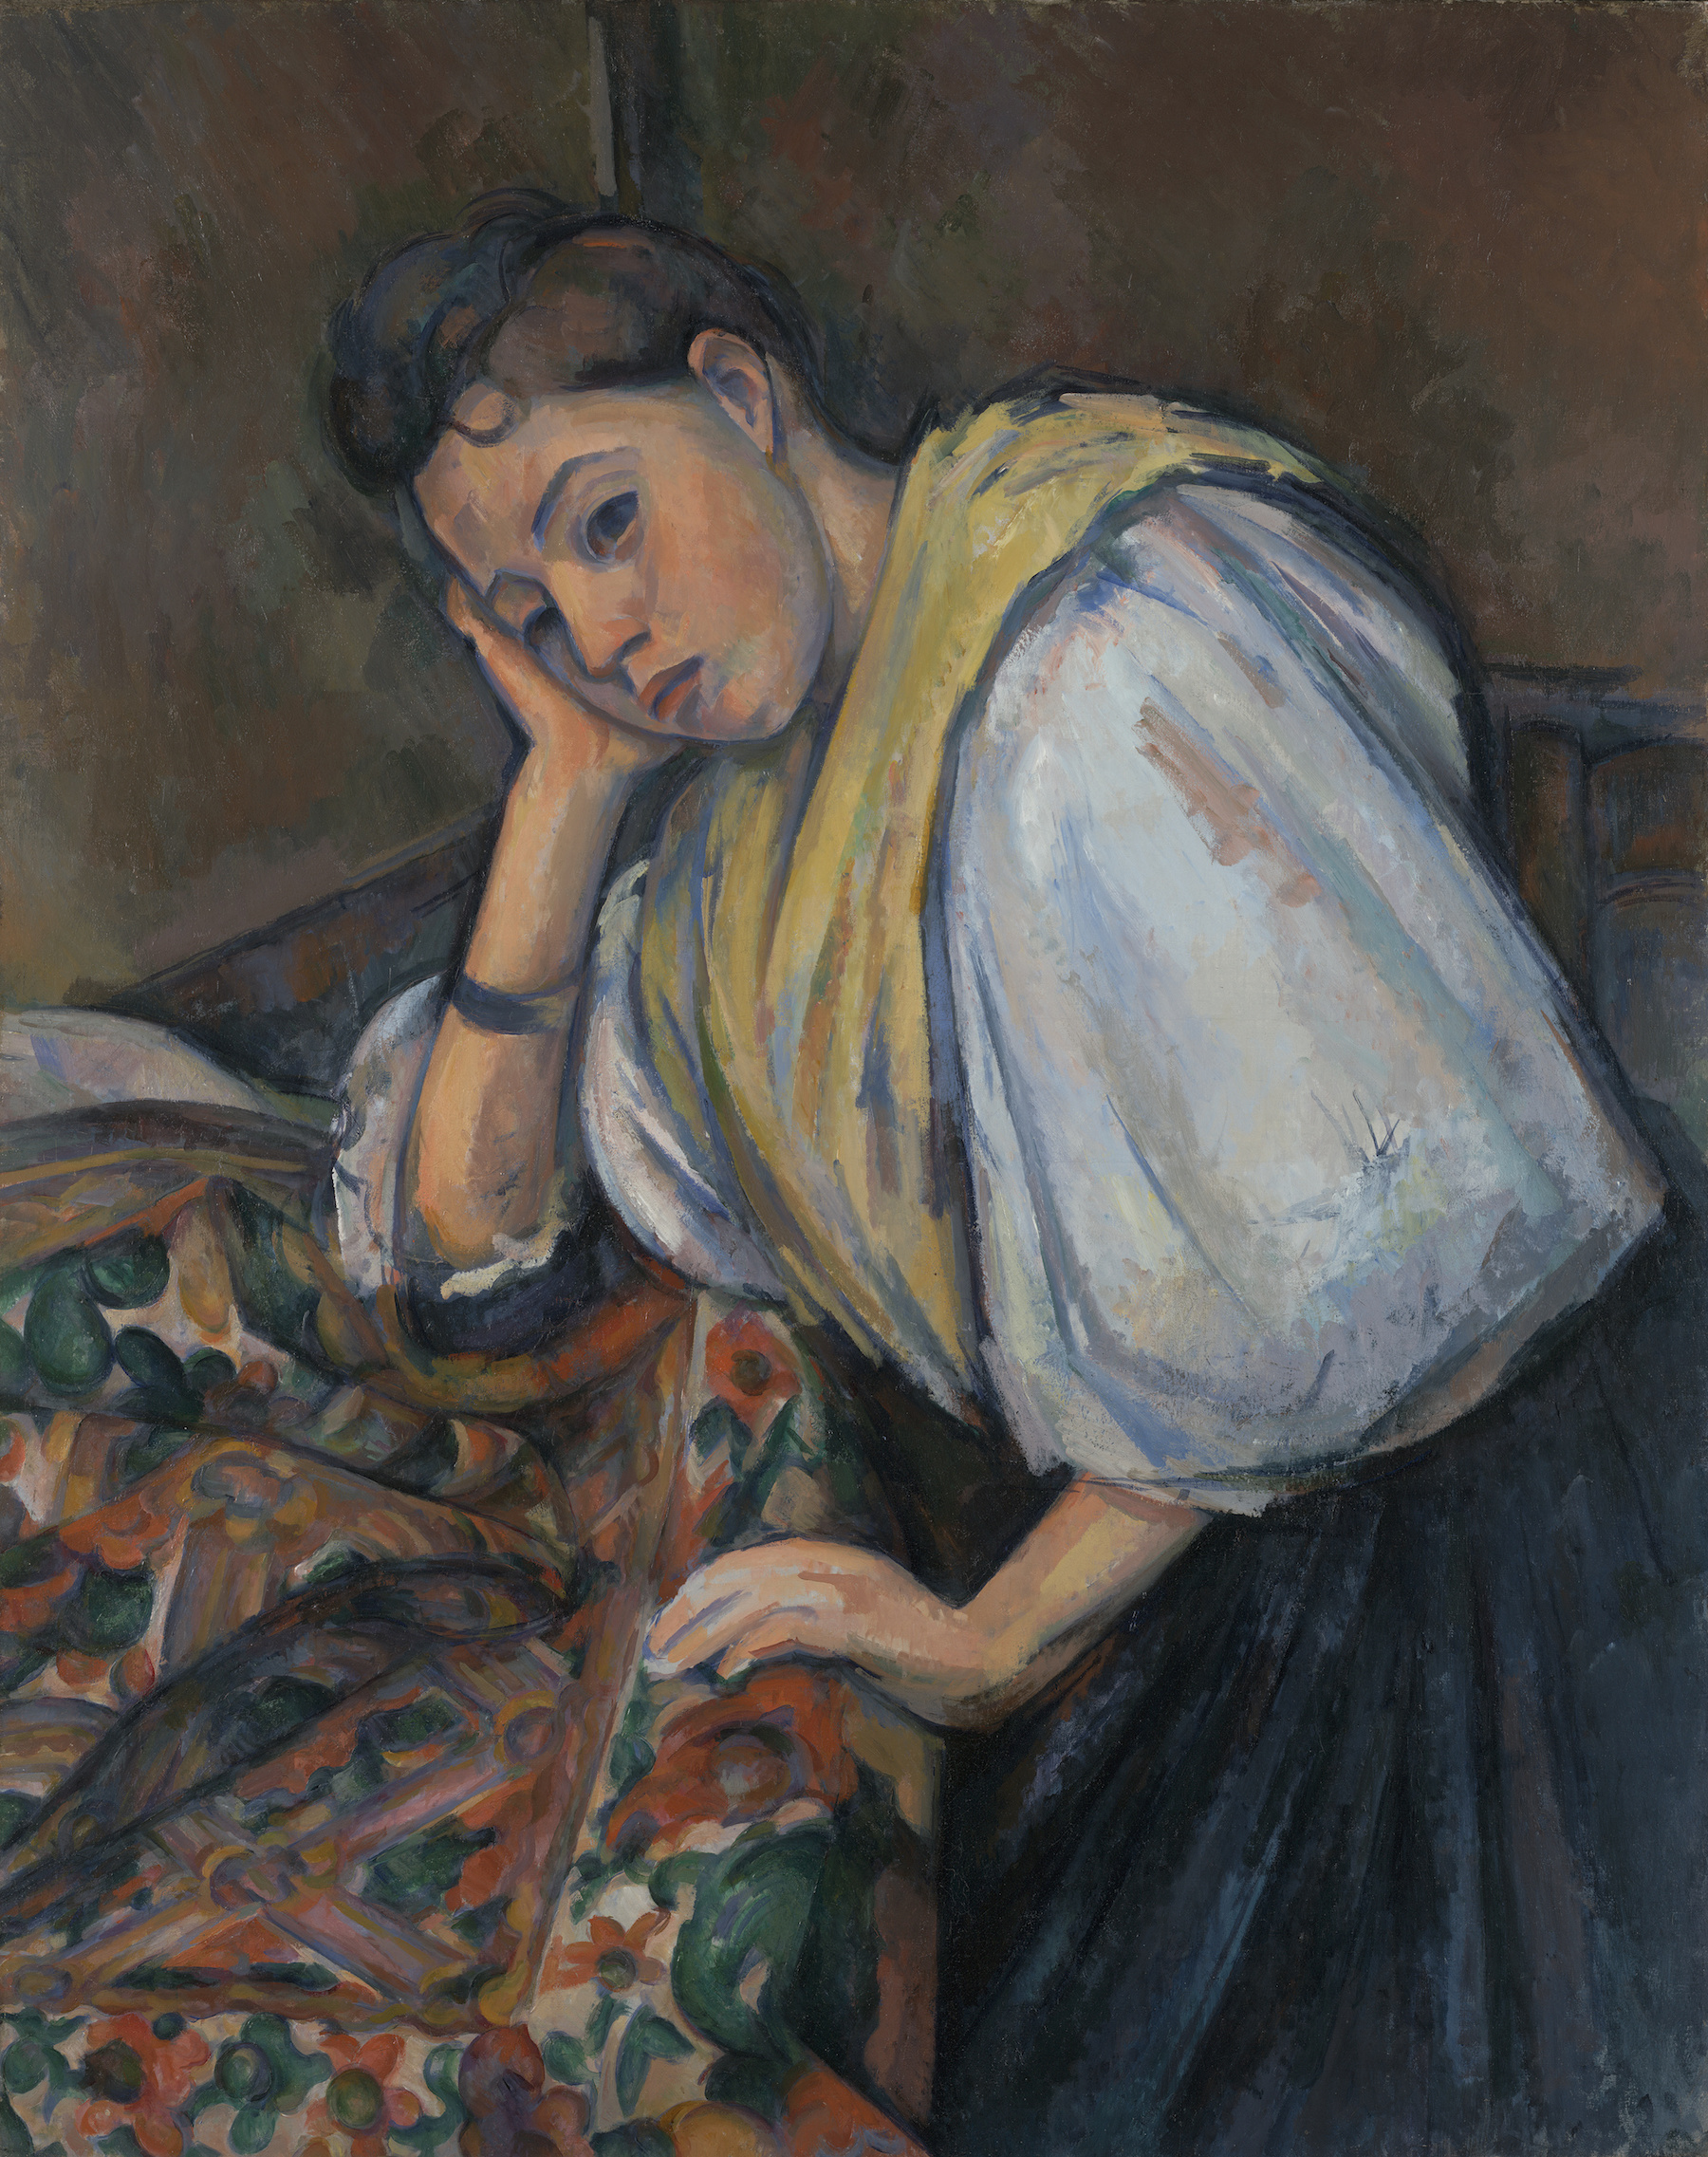 机のそばのイタリアの乙女 by Paul Cézanne - 1895 - 1900 - 92.1 x 73.5 cm 